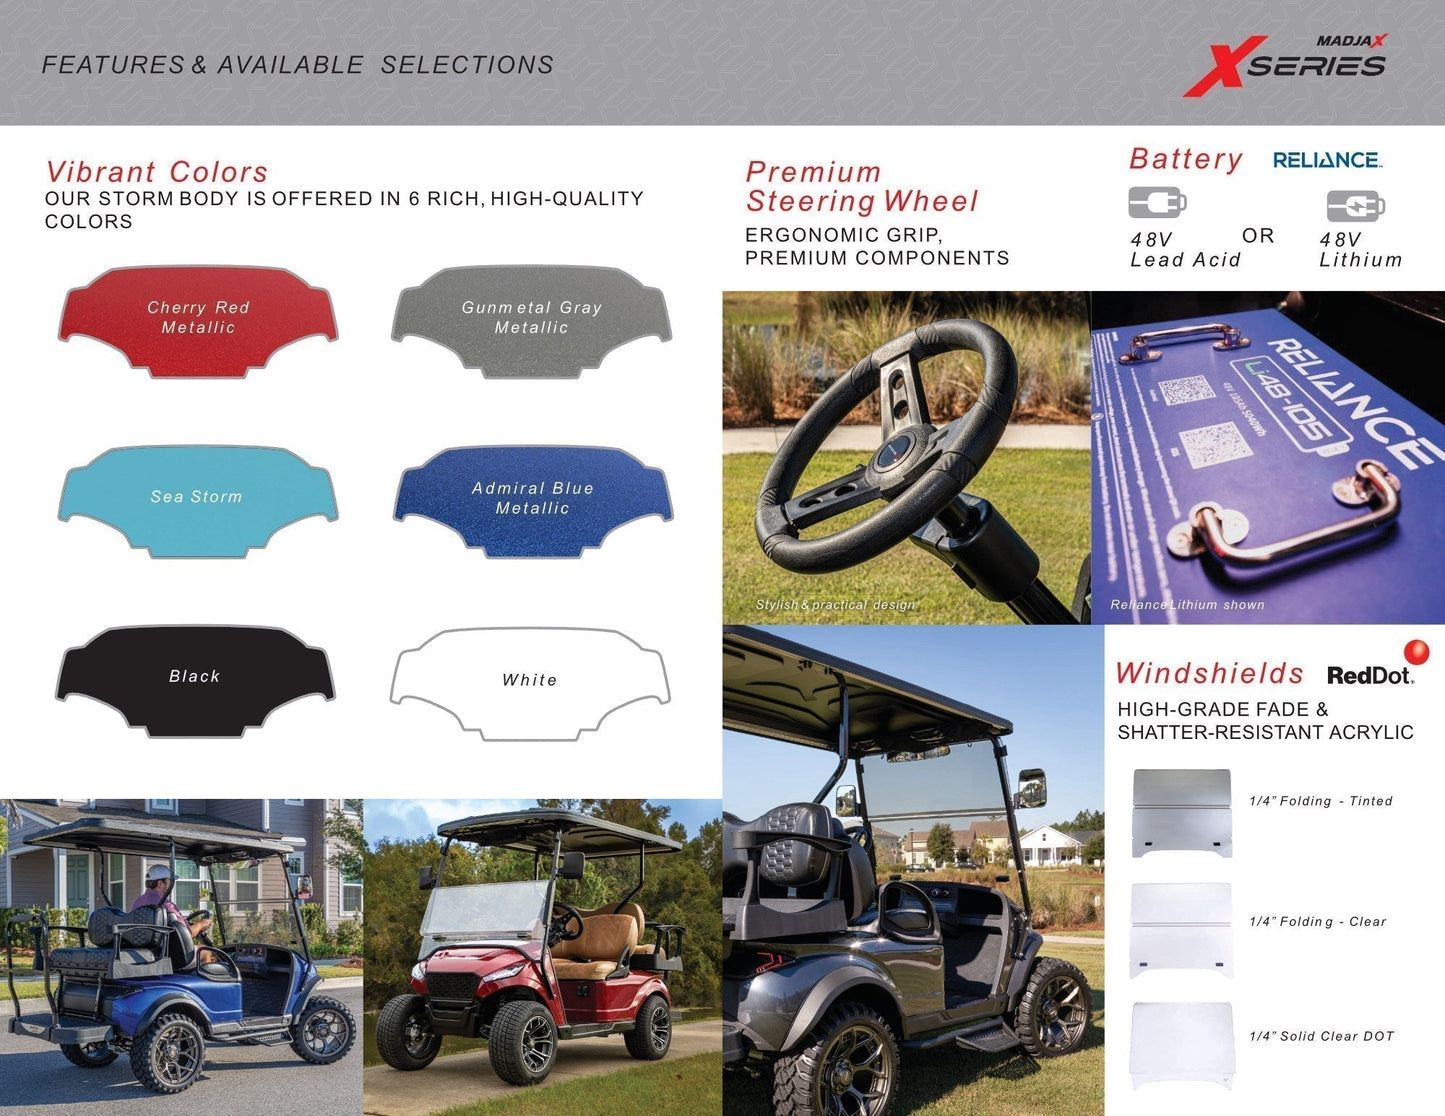 MADJAX X Series Storm Lifted 4 Passenger Golf Cart - Cherry Metallic #1084 *SOLD*